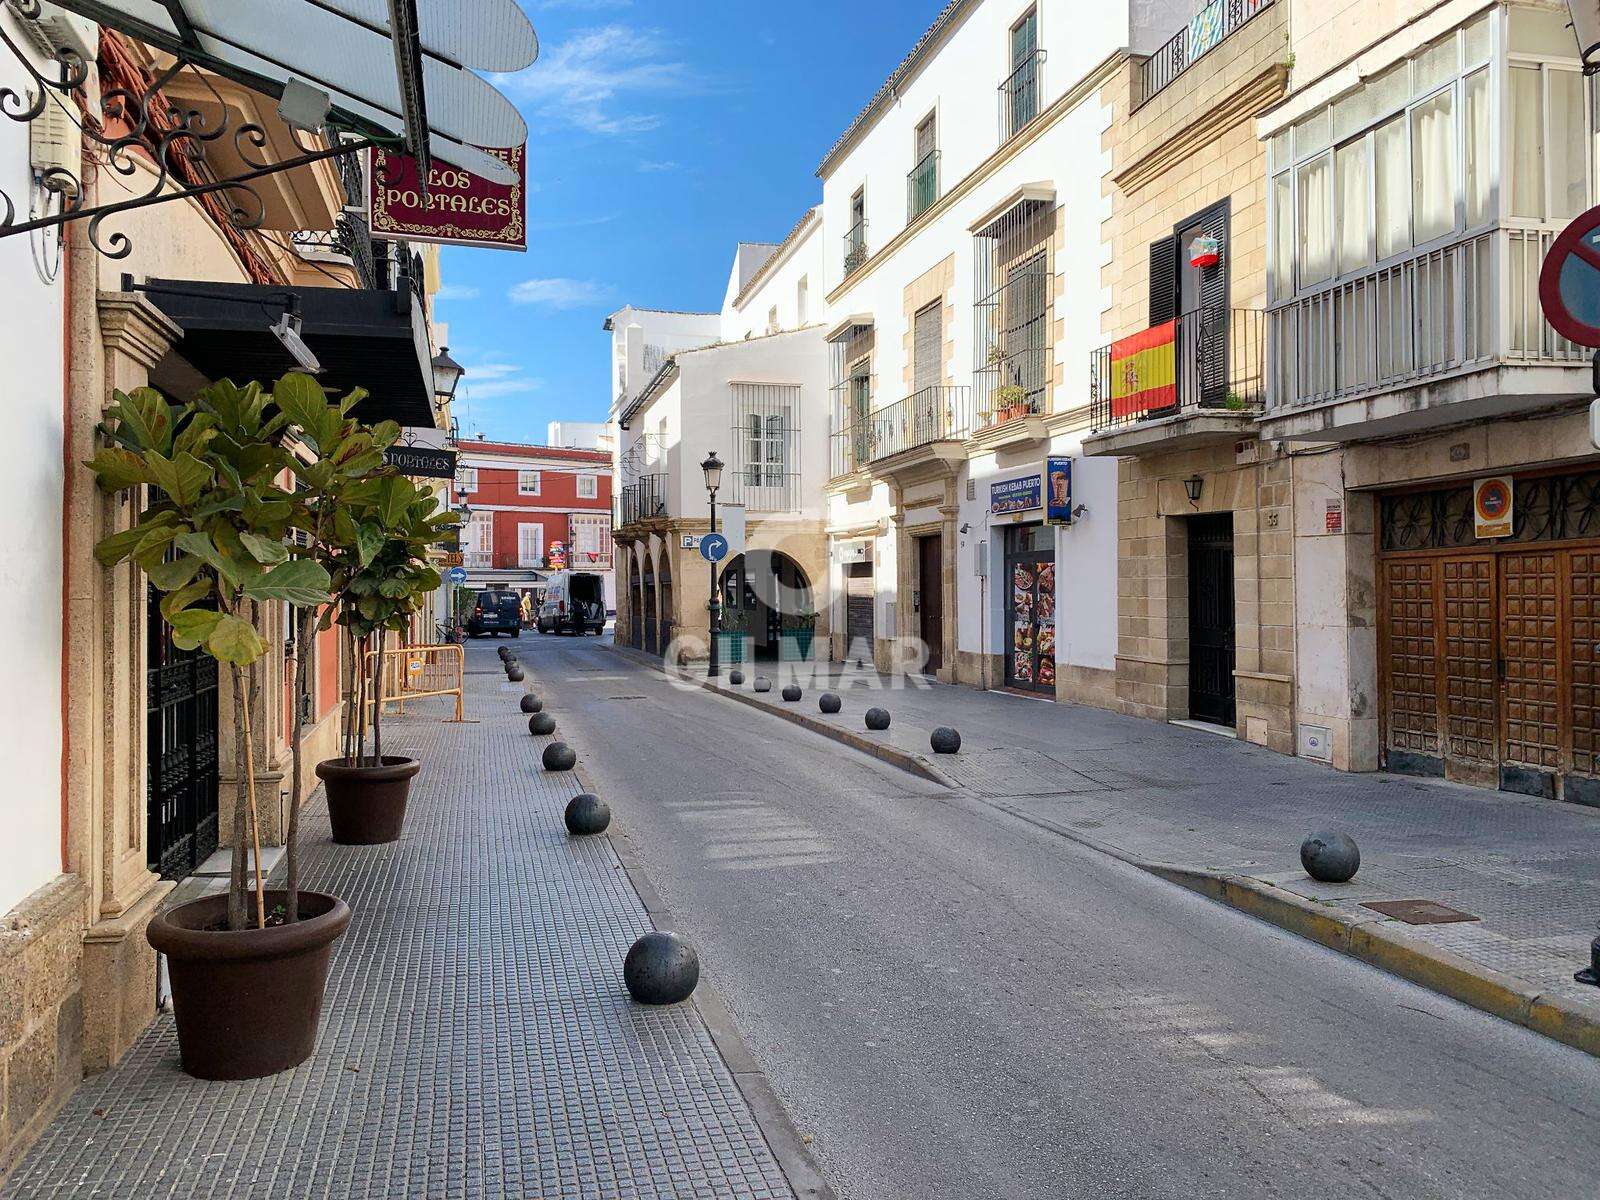 Solar Urbano en venta en Puerto de Santa María – Cádiz | Gilmar